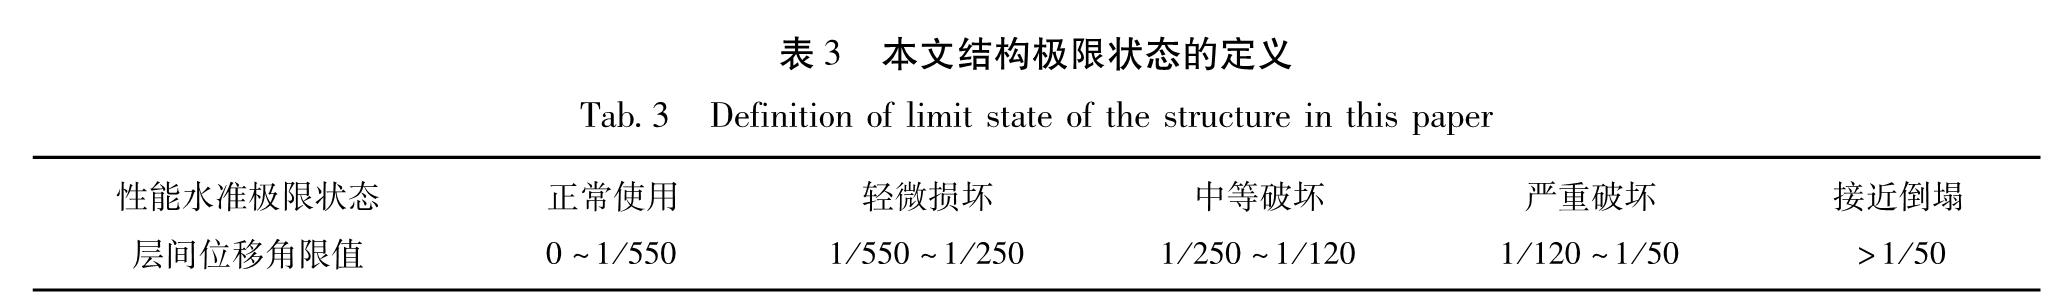 表3 本文结构极限状态的定义<br/>Tab.3 Definition of limit state of the structure in this paper